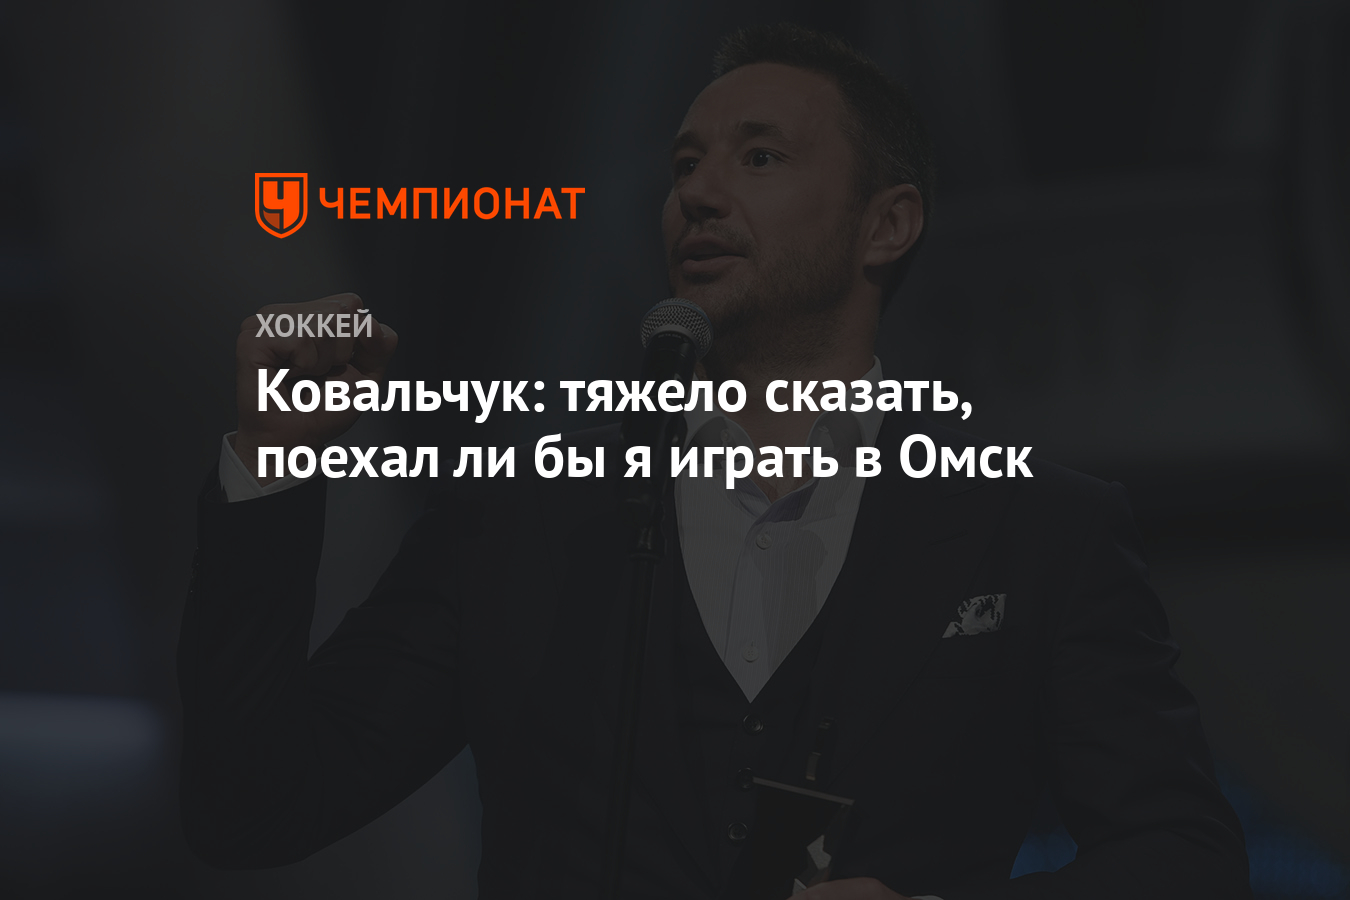 Ковальчук: трудно сказать, поехал бы я играть в Омск